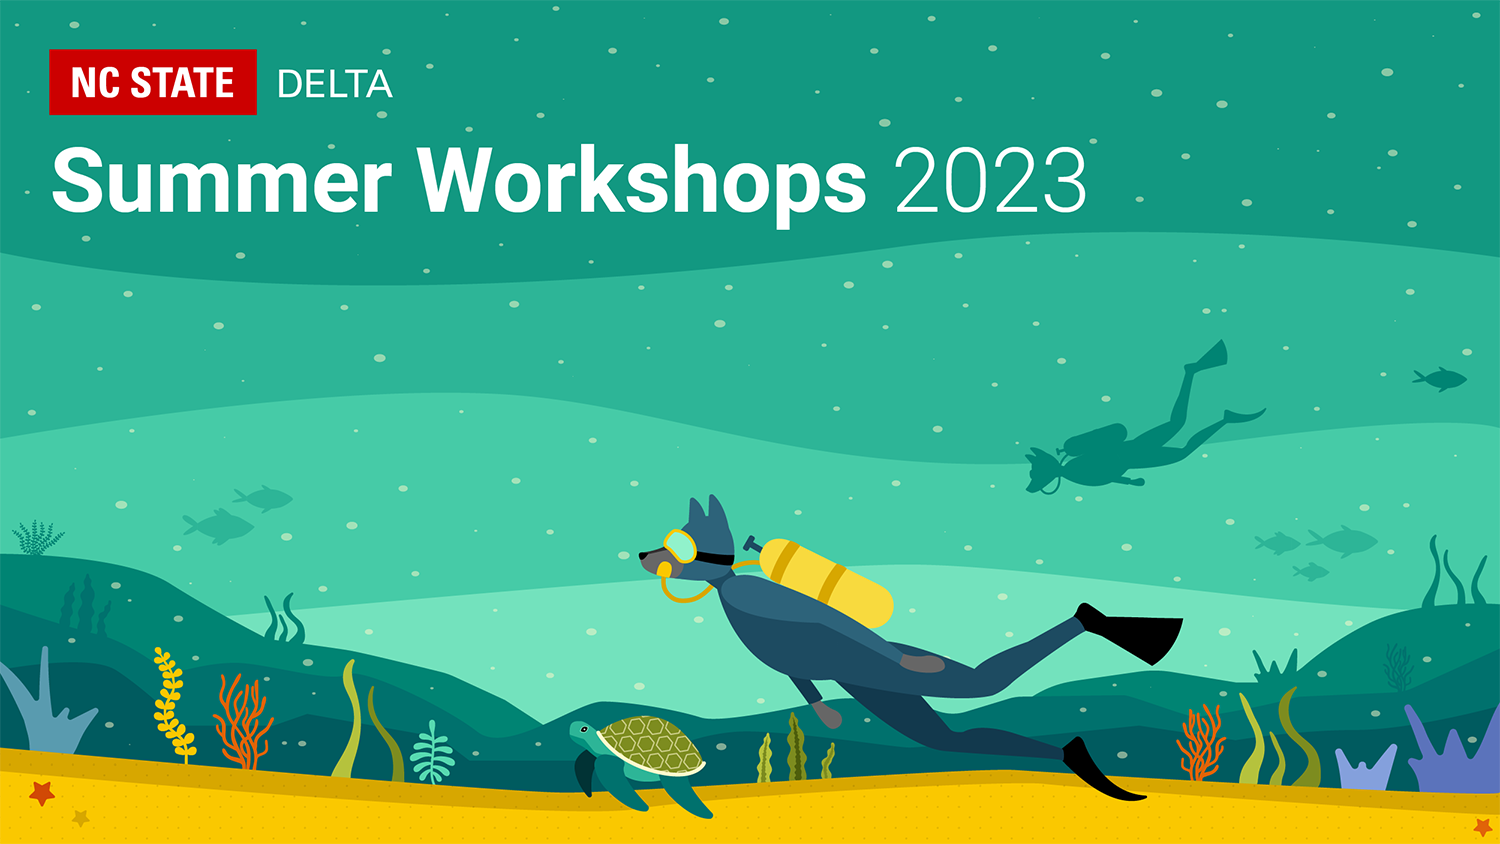 NC State DELTA Summer Workshops 2023